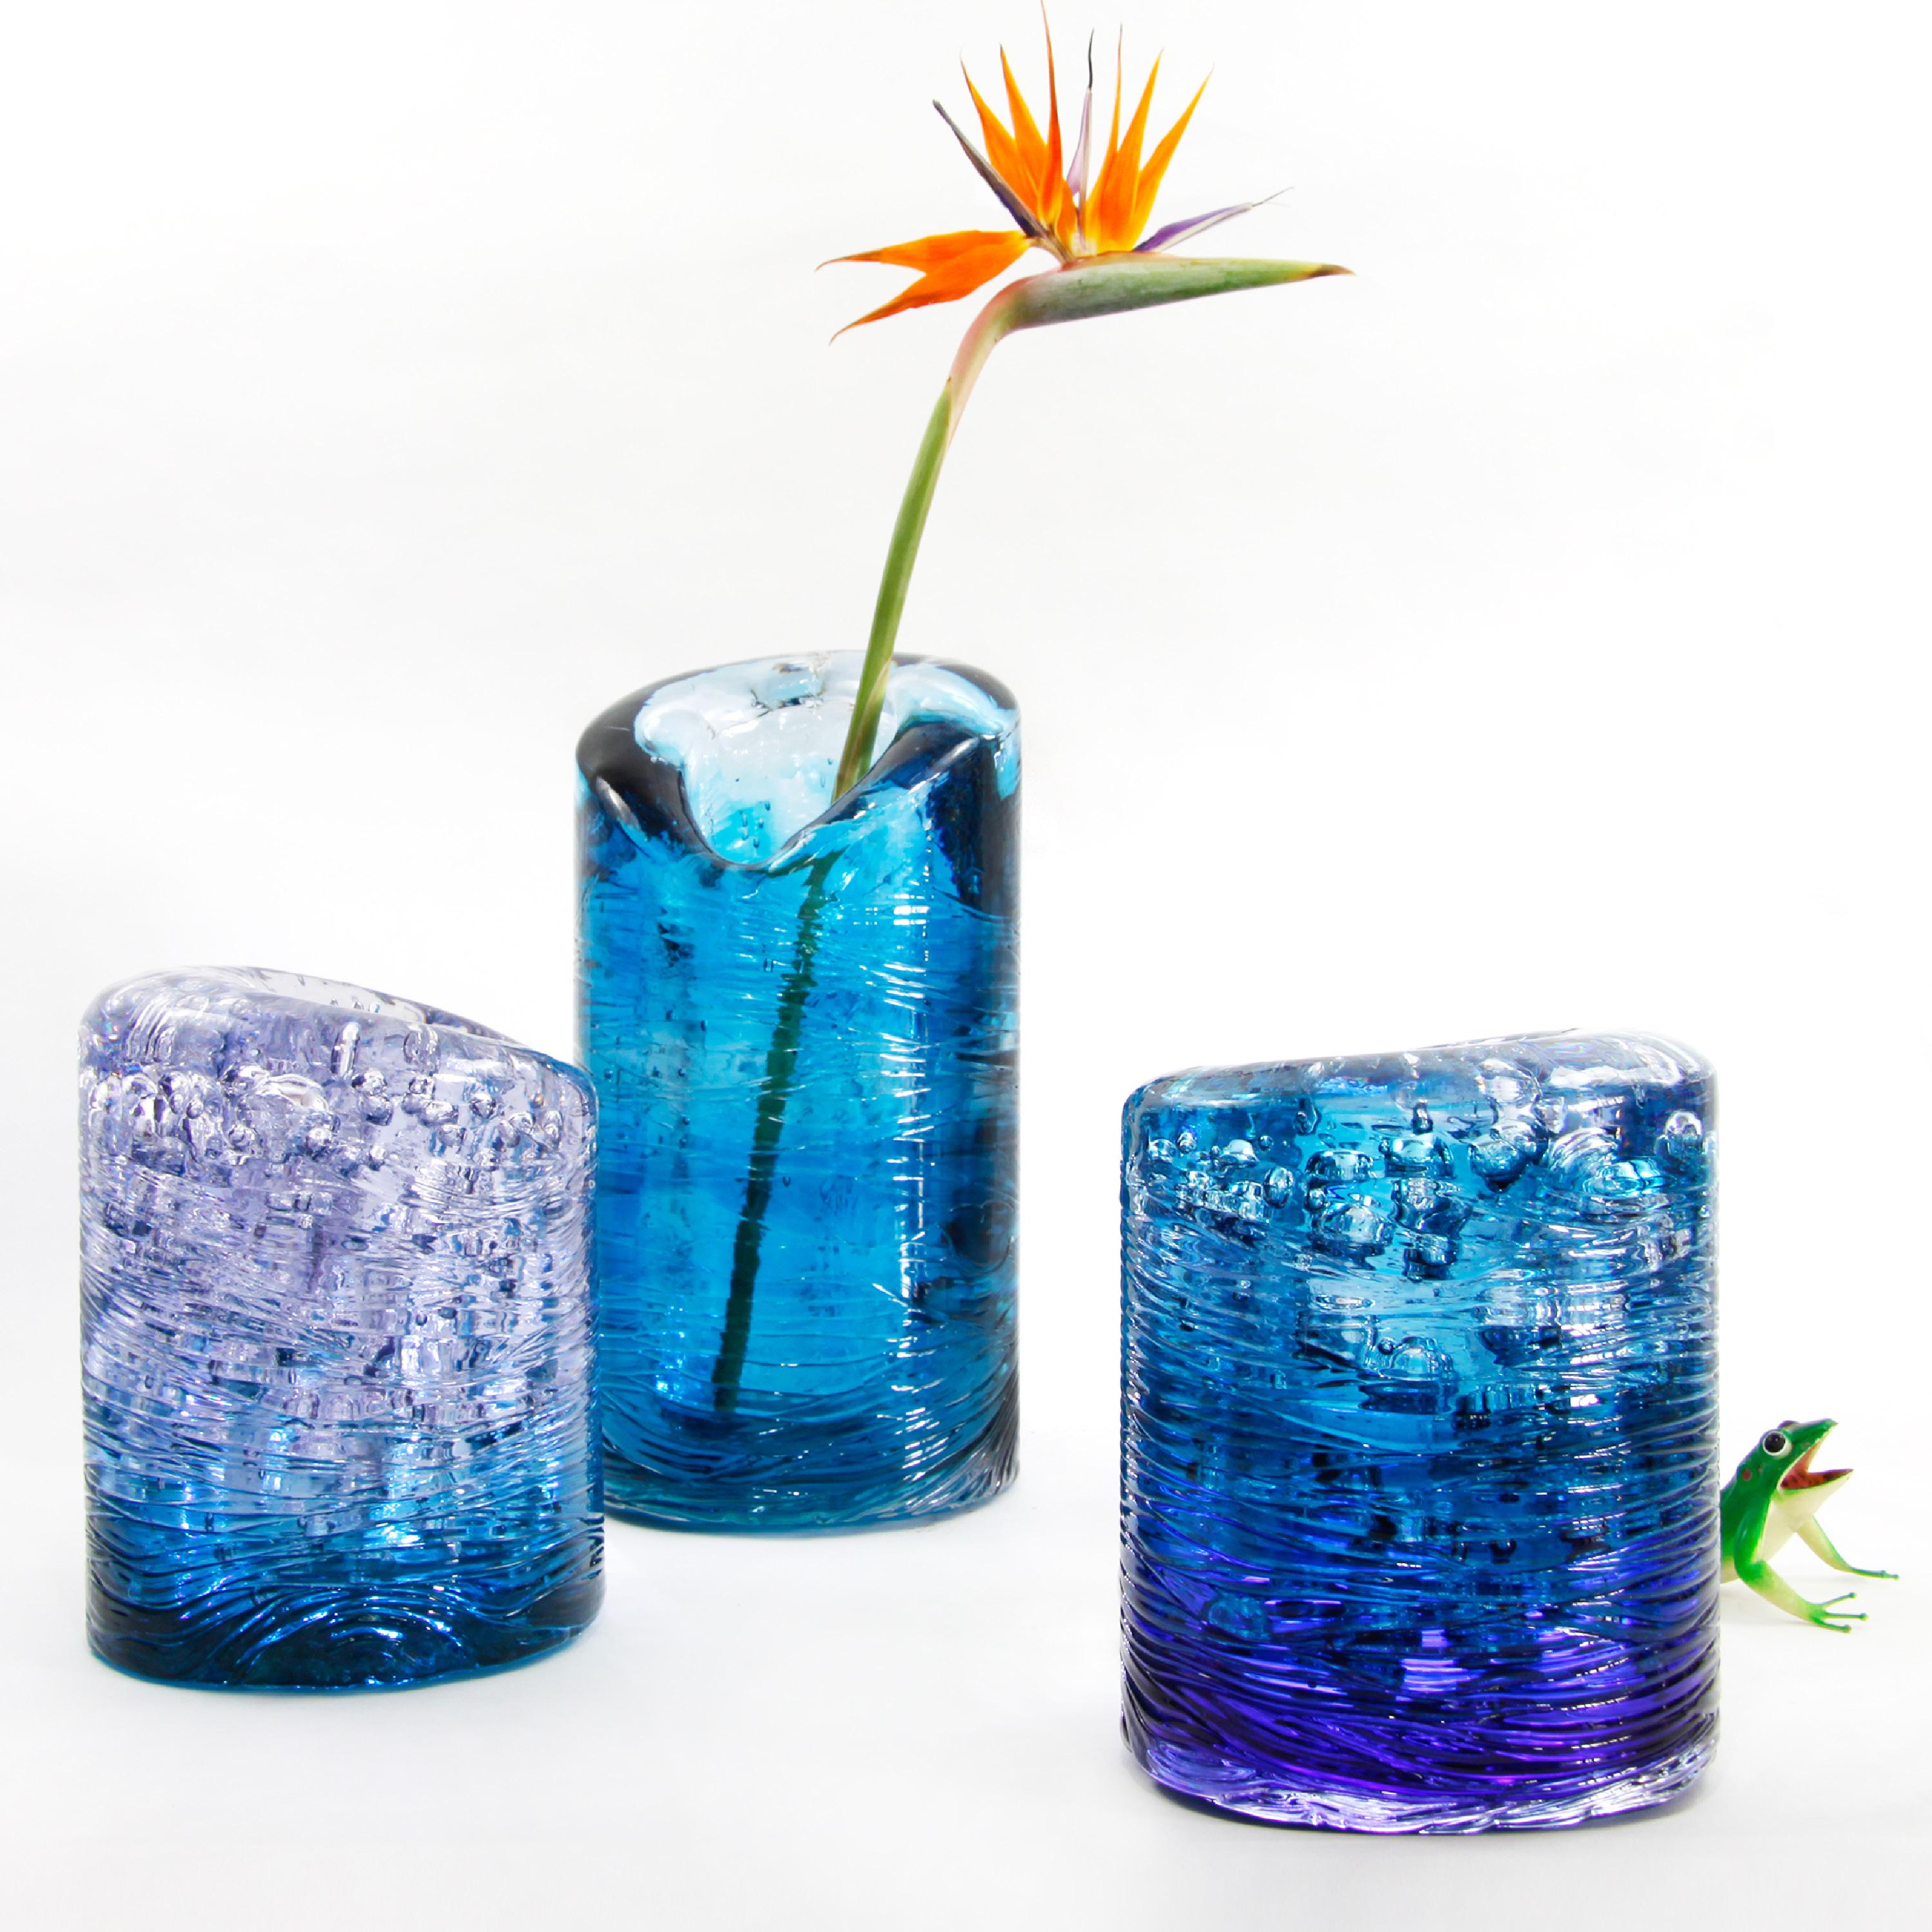 Italian Jungle Contemporary Vase, Large Version in Monochrome Blue by Jacopo Foggini For Sale